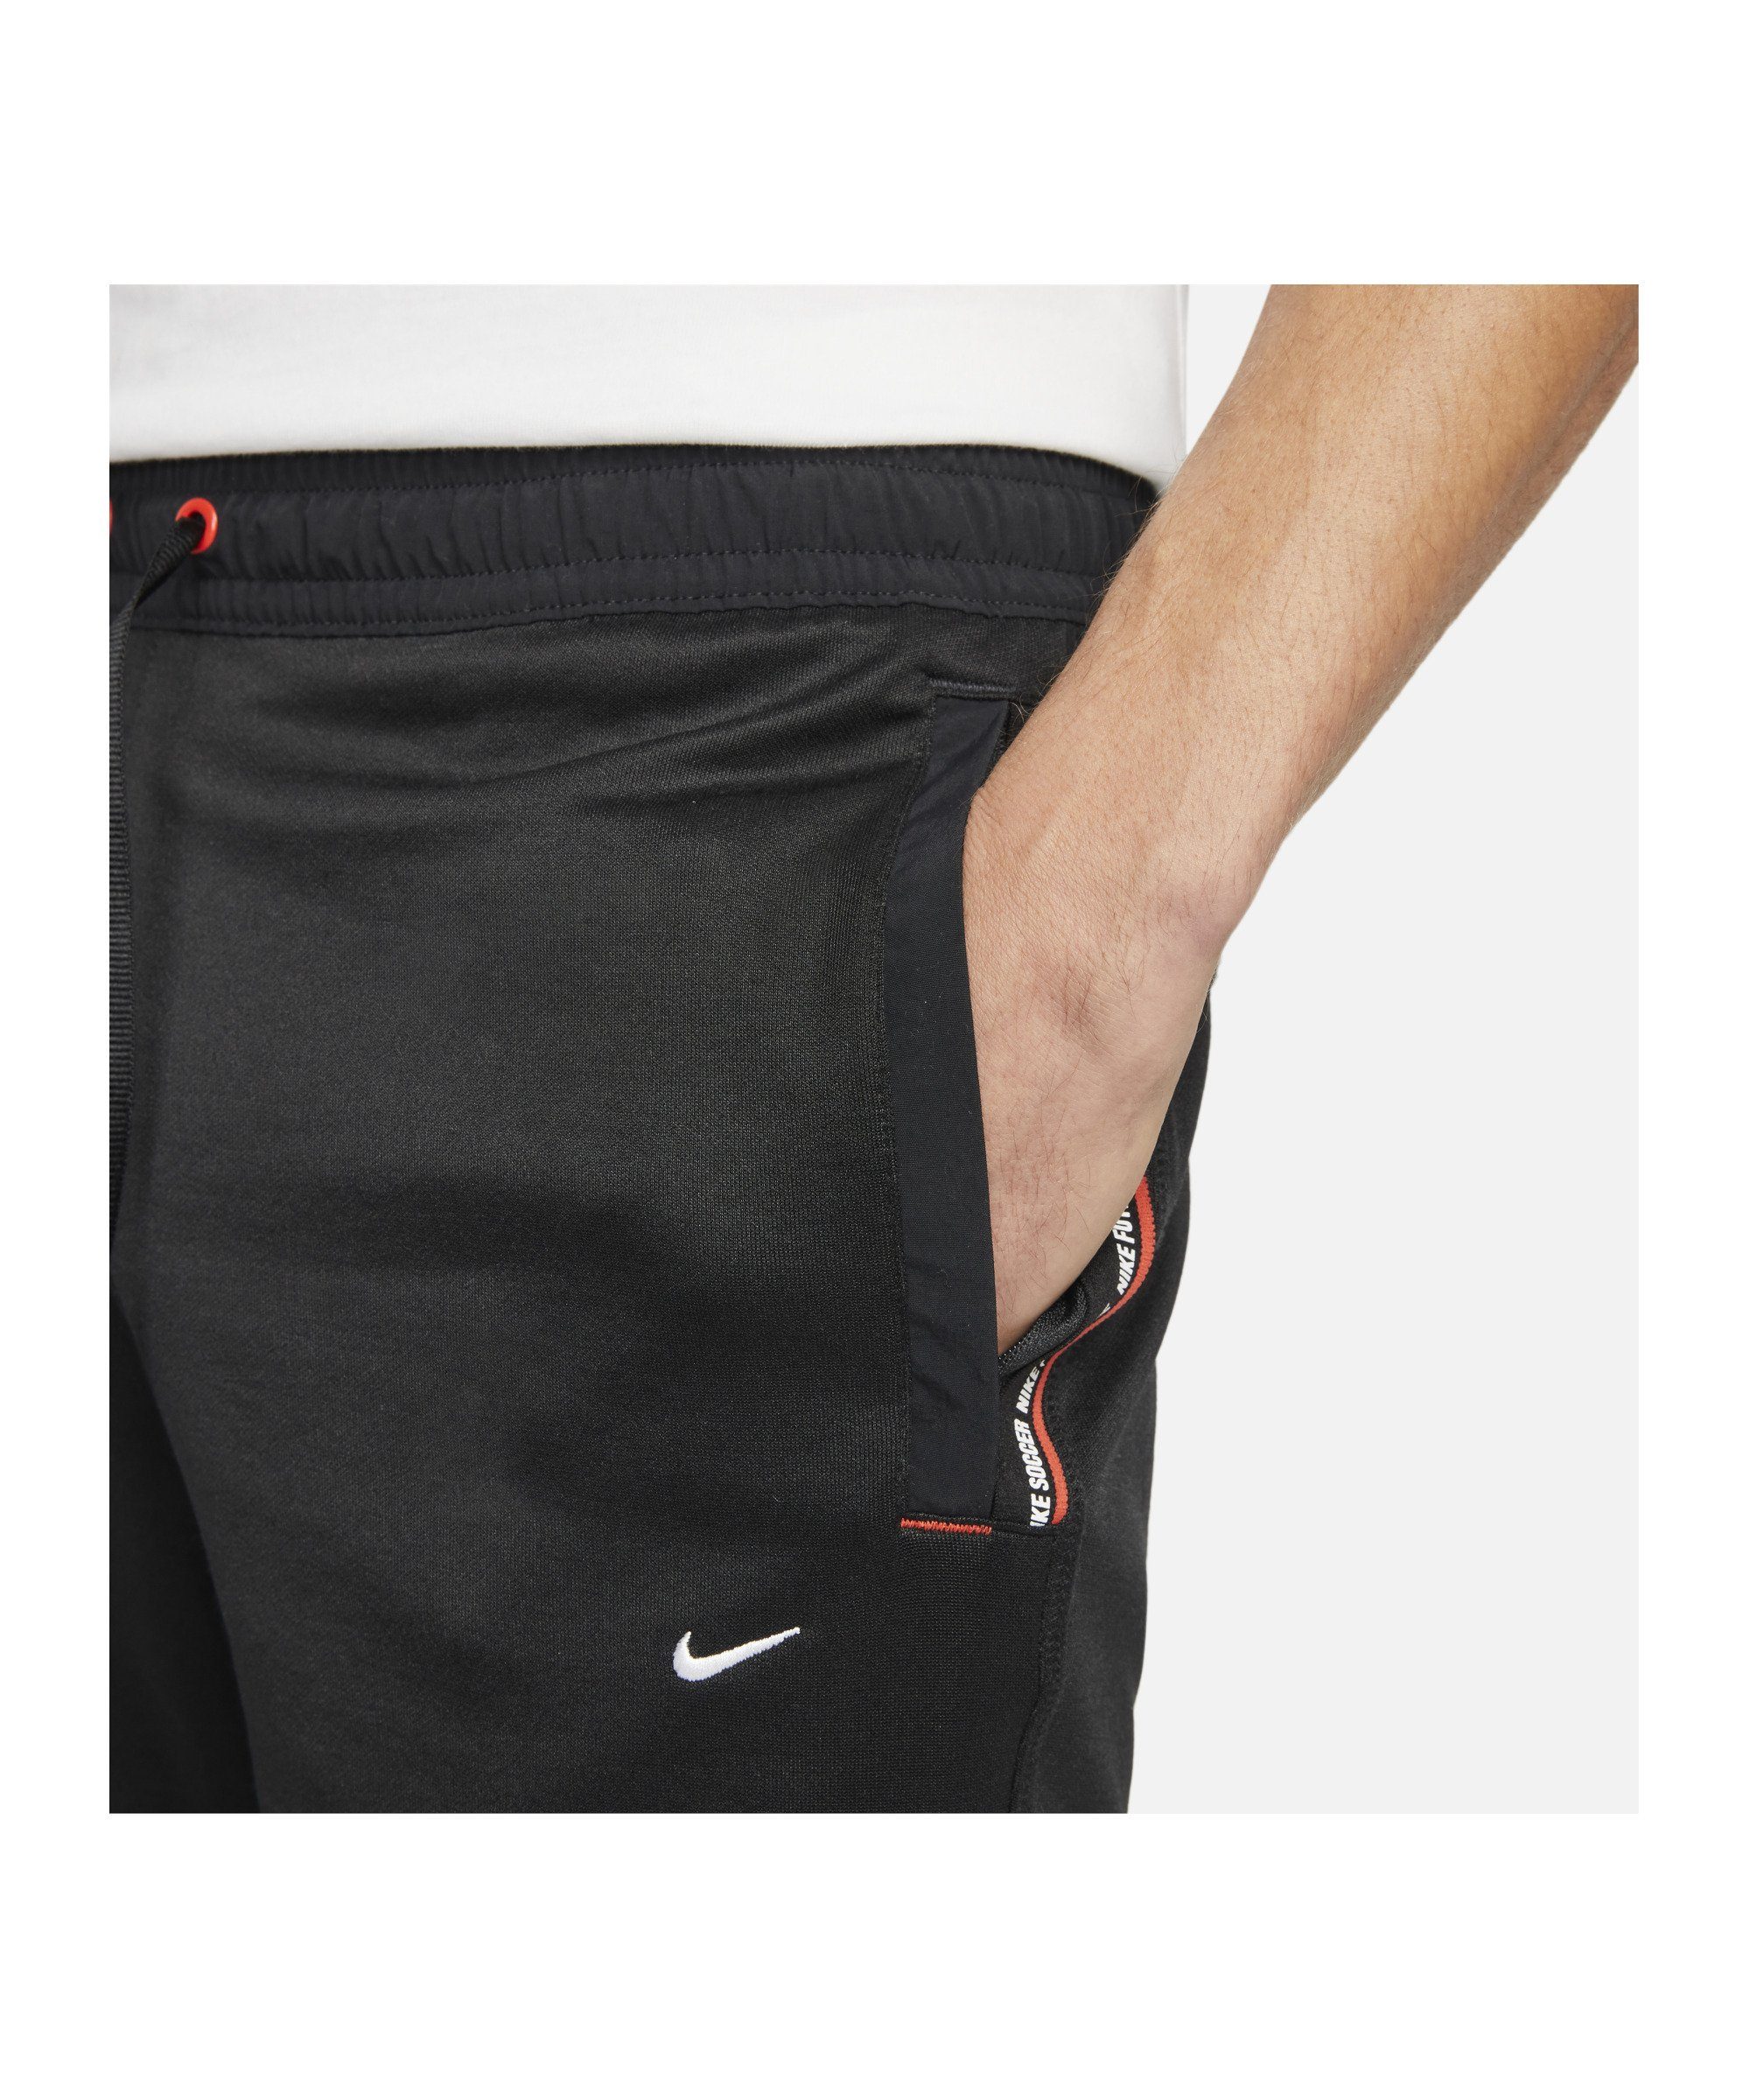 F.C. Sportswear Jogginghose 8in Short Tribuna Nike schwarzrotweiss